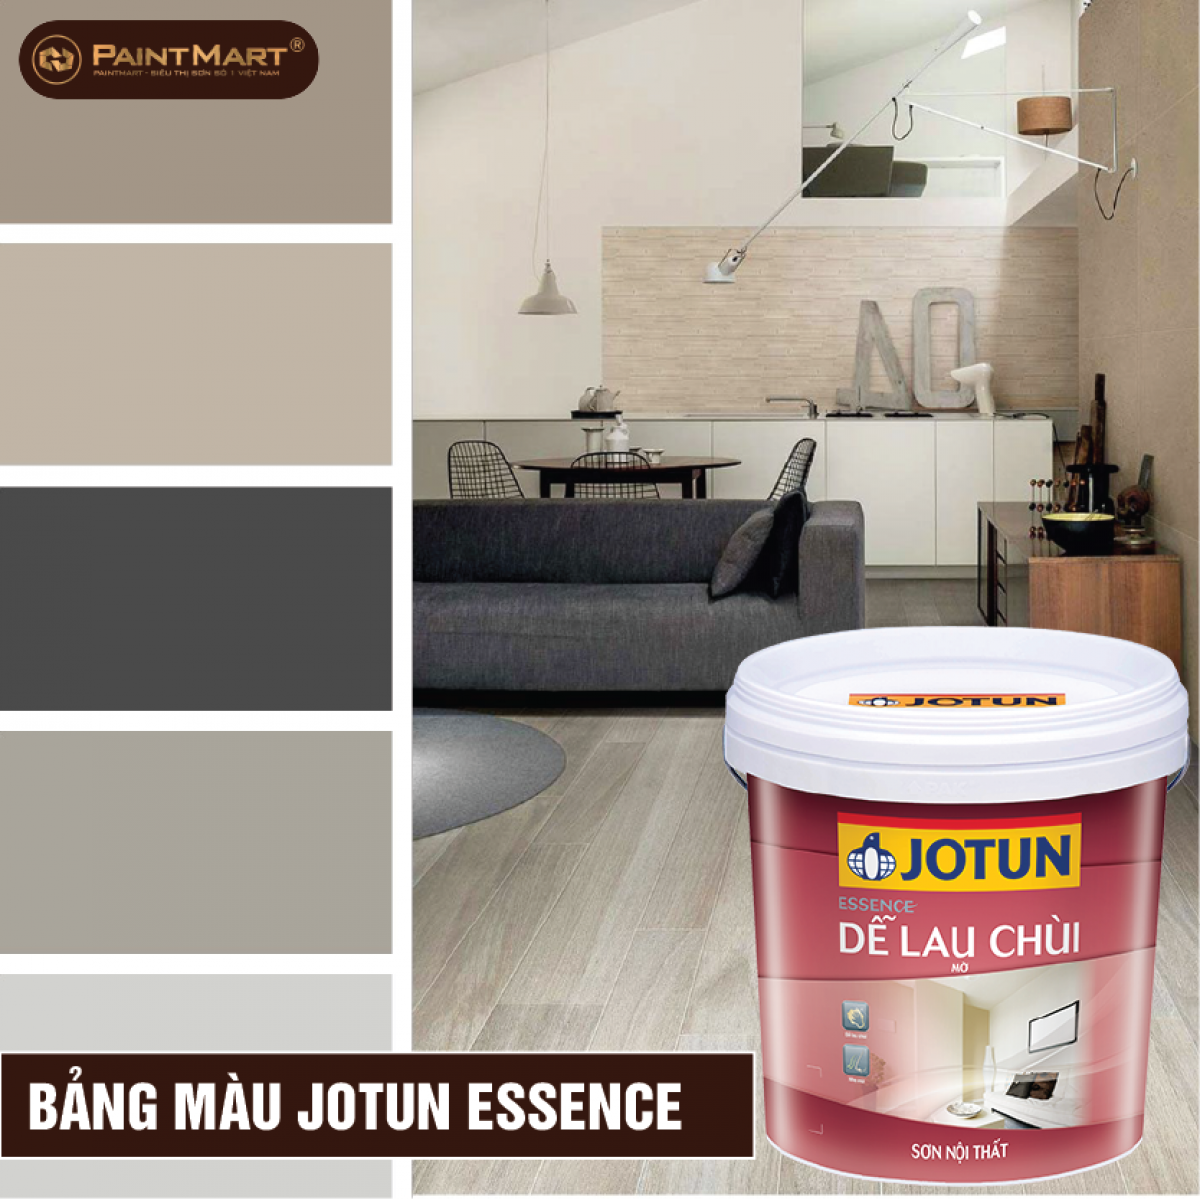 Sơn nội ngoại thất essence của Jotun là lựa chọn tốt nhất để bảo vệ ngôi nhà của bạn khỏi tác động của thời tiết. Với chất lượng vượt trội và độ bền cao, sản phẩm này sẽ giúp căn nhà của bạn luôn giữ được vẻ đẹp tươi mới như mới sơn.